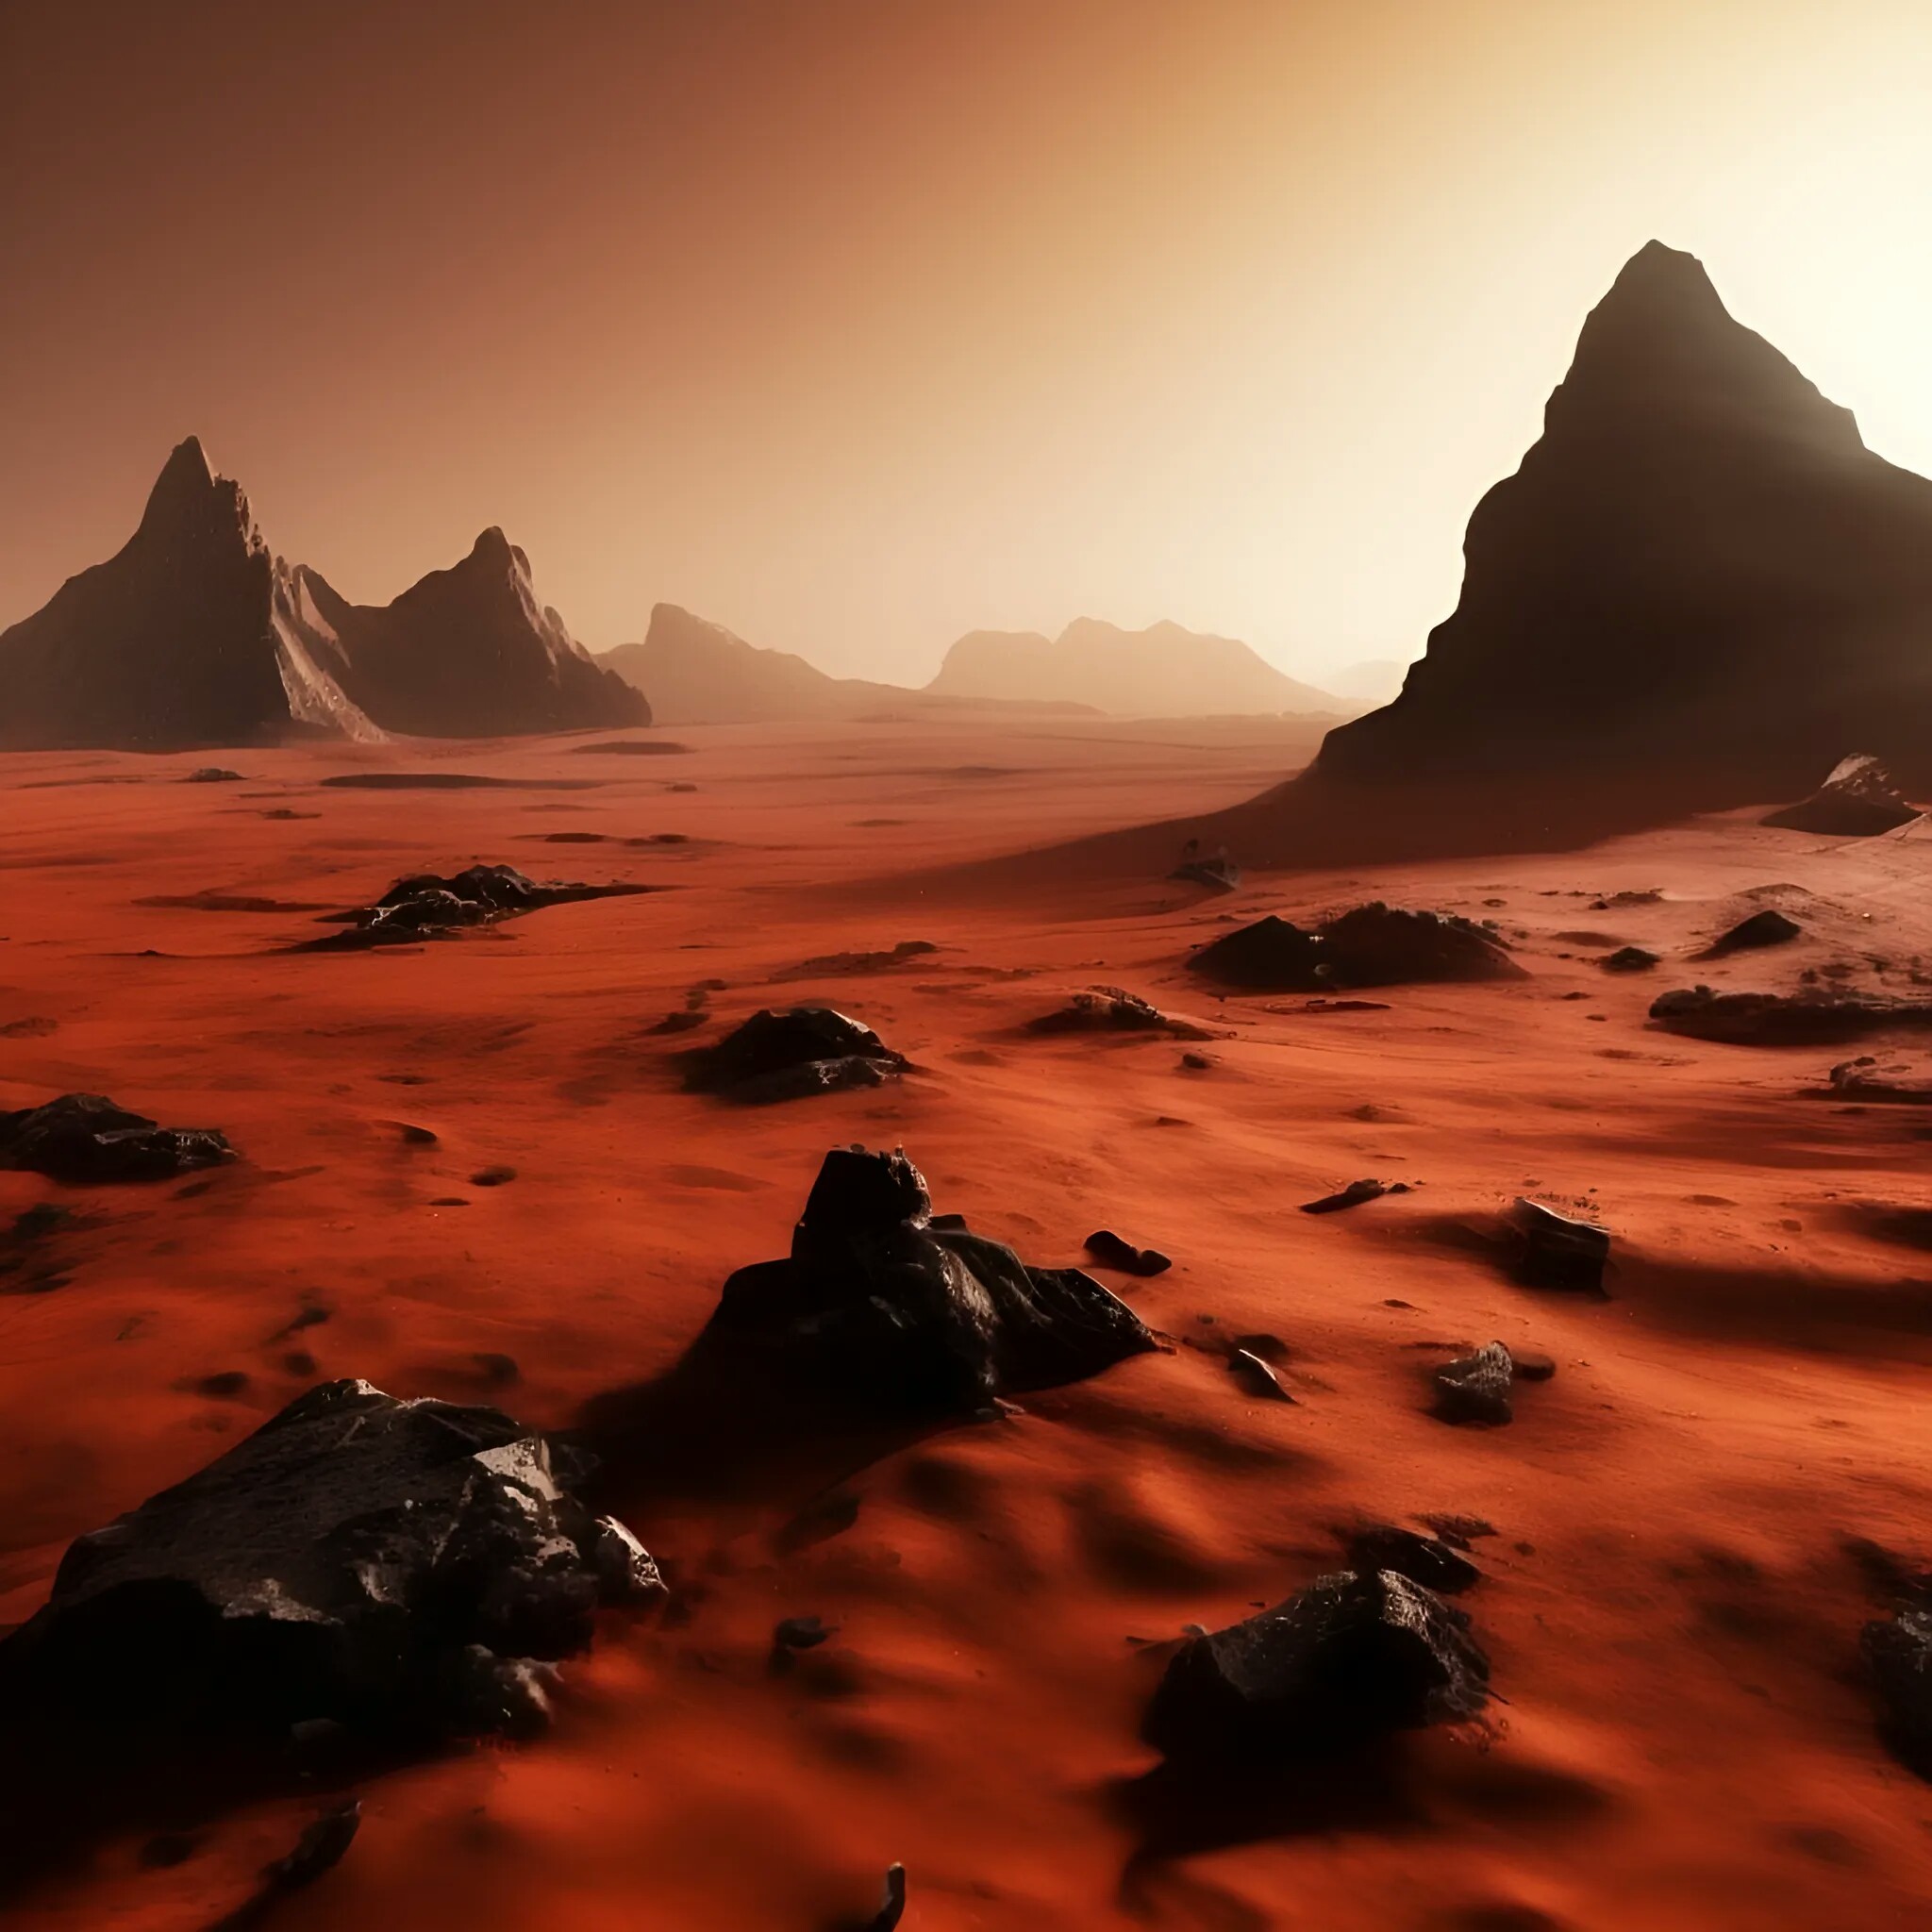 Марсианская пустыня